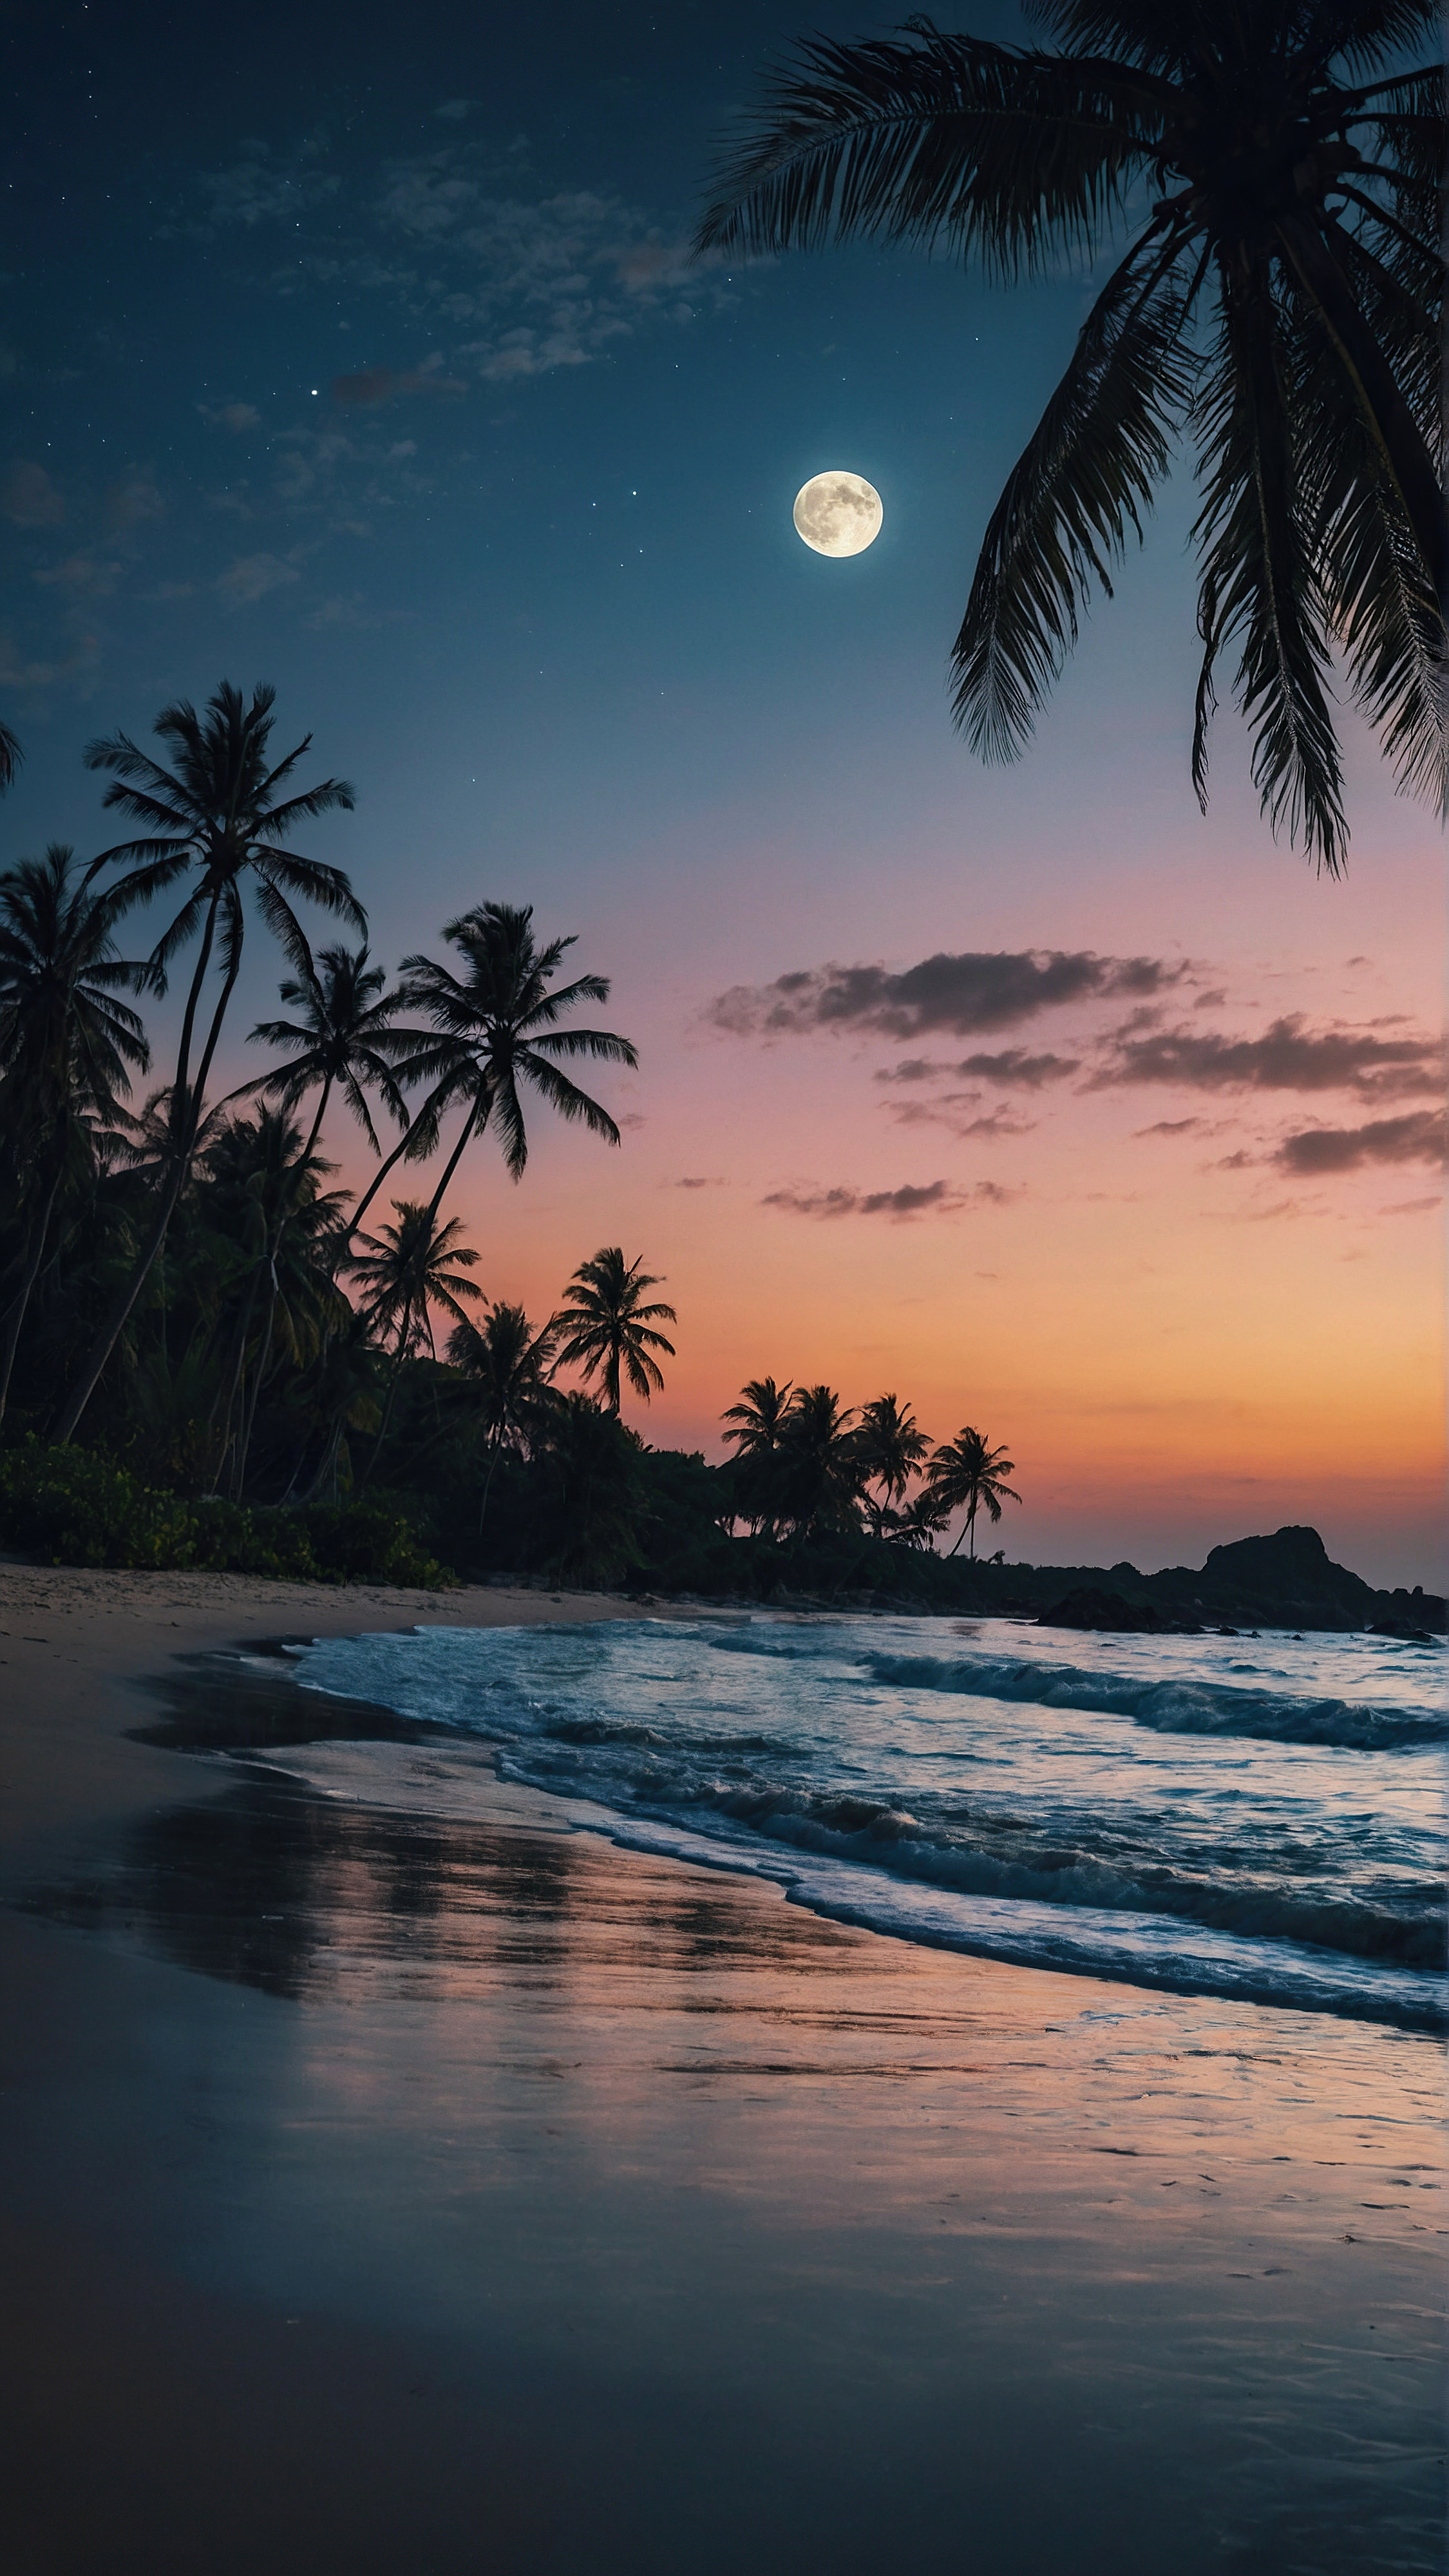 Découvrez le charme tropical de notre fond d'écran iPhone en 4K, où une grande lune illumine une scène de plage envoûtante au crépuscule, se reflétant sur les vagues qui clapotent doucement et mettant en valeur les silhouettes des palmiers dans ce paysage serein. 